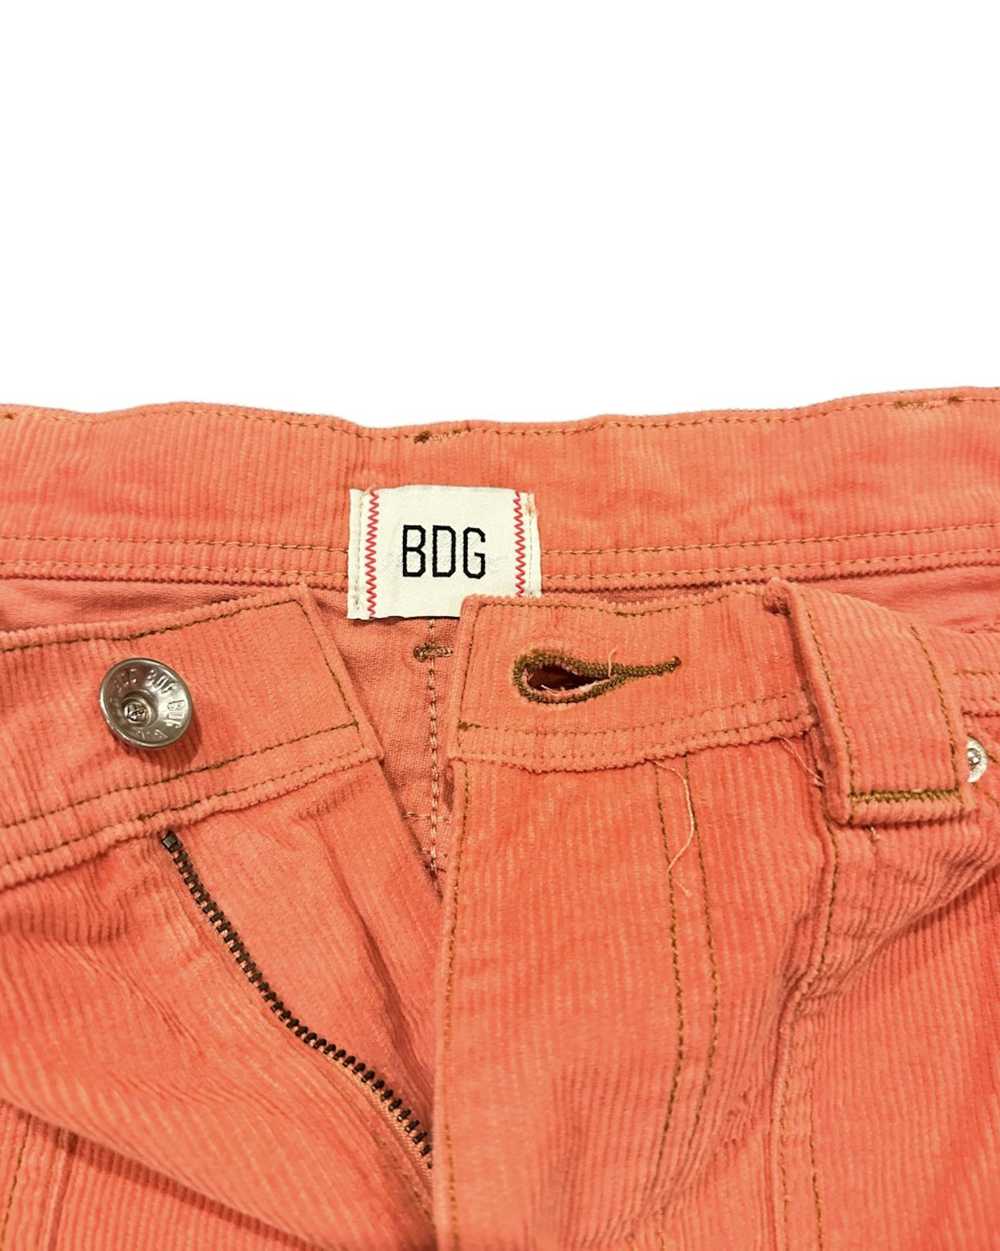 Bdg × Jaded London × MNML BDG corduroy jeans - image 7